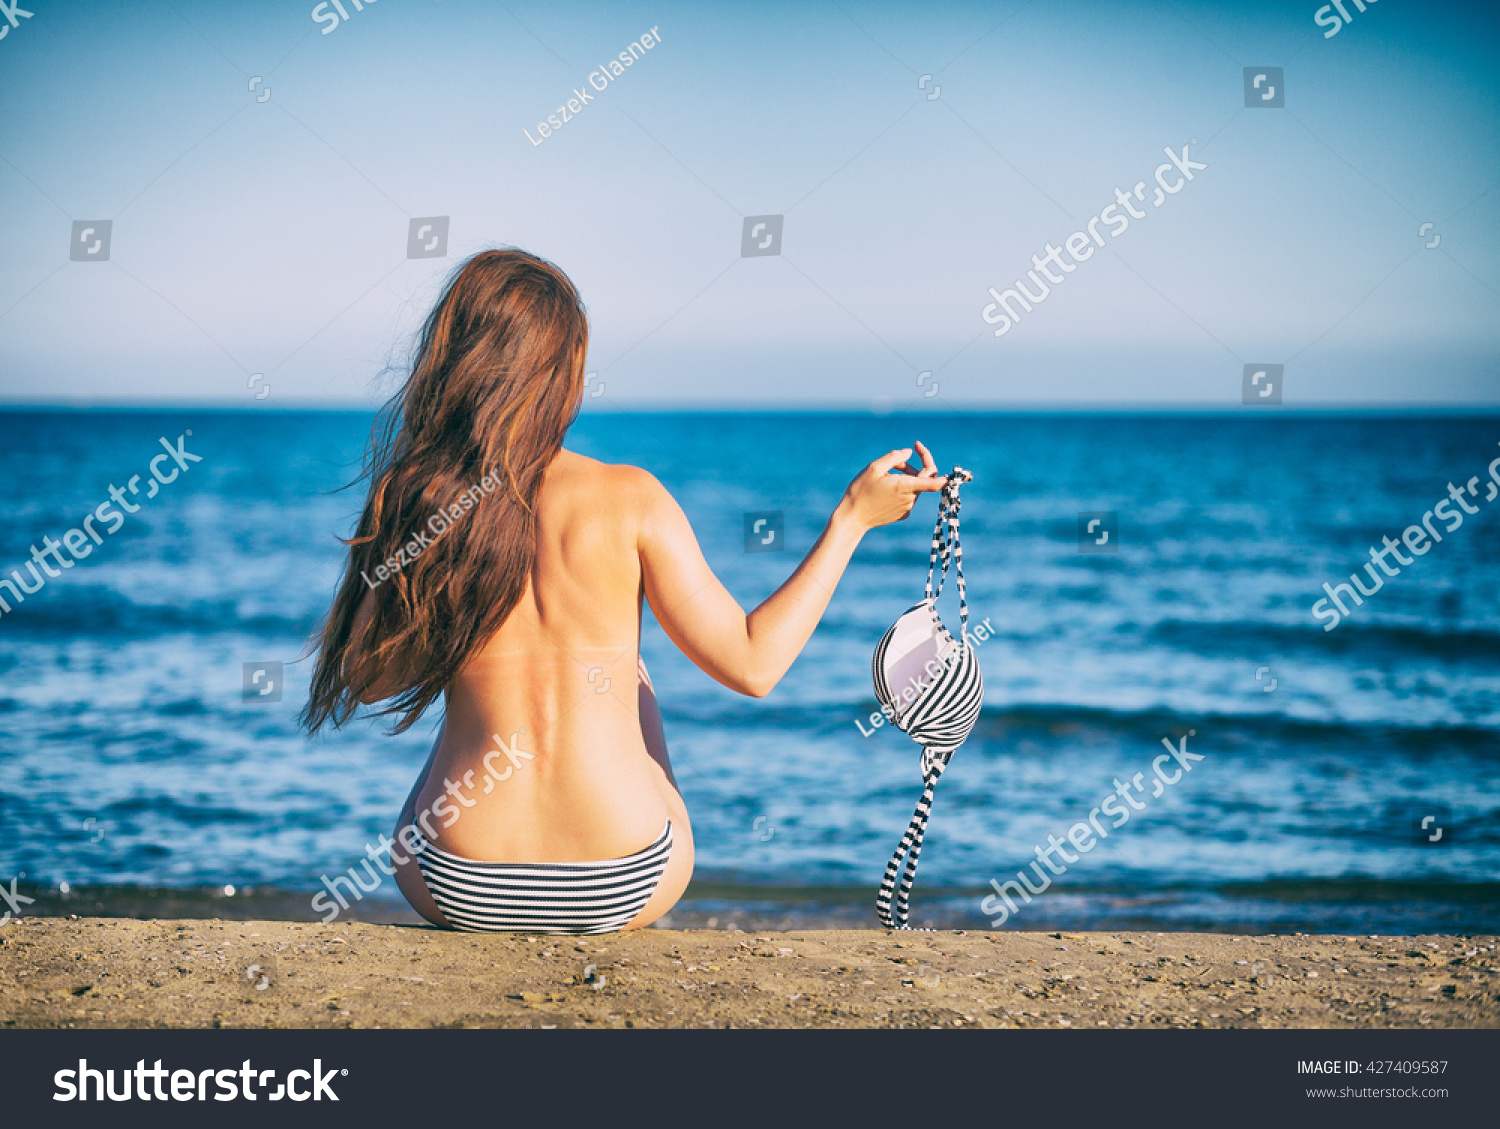 ビキニを持つトップレスのビーチの美しい女性 の写真素材 今すぐ編集